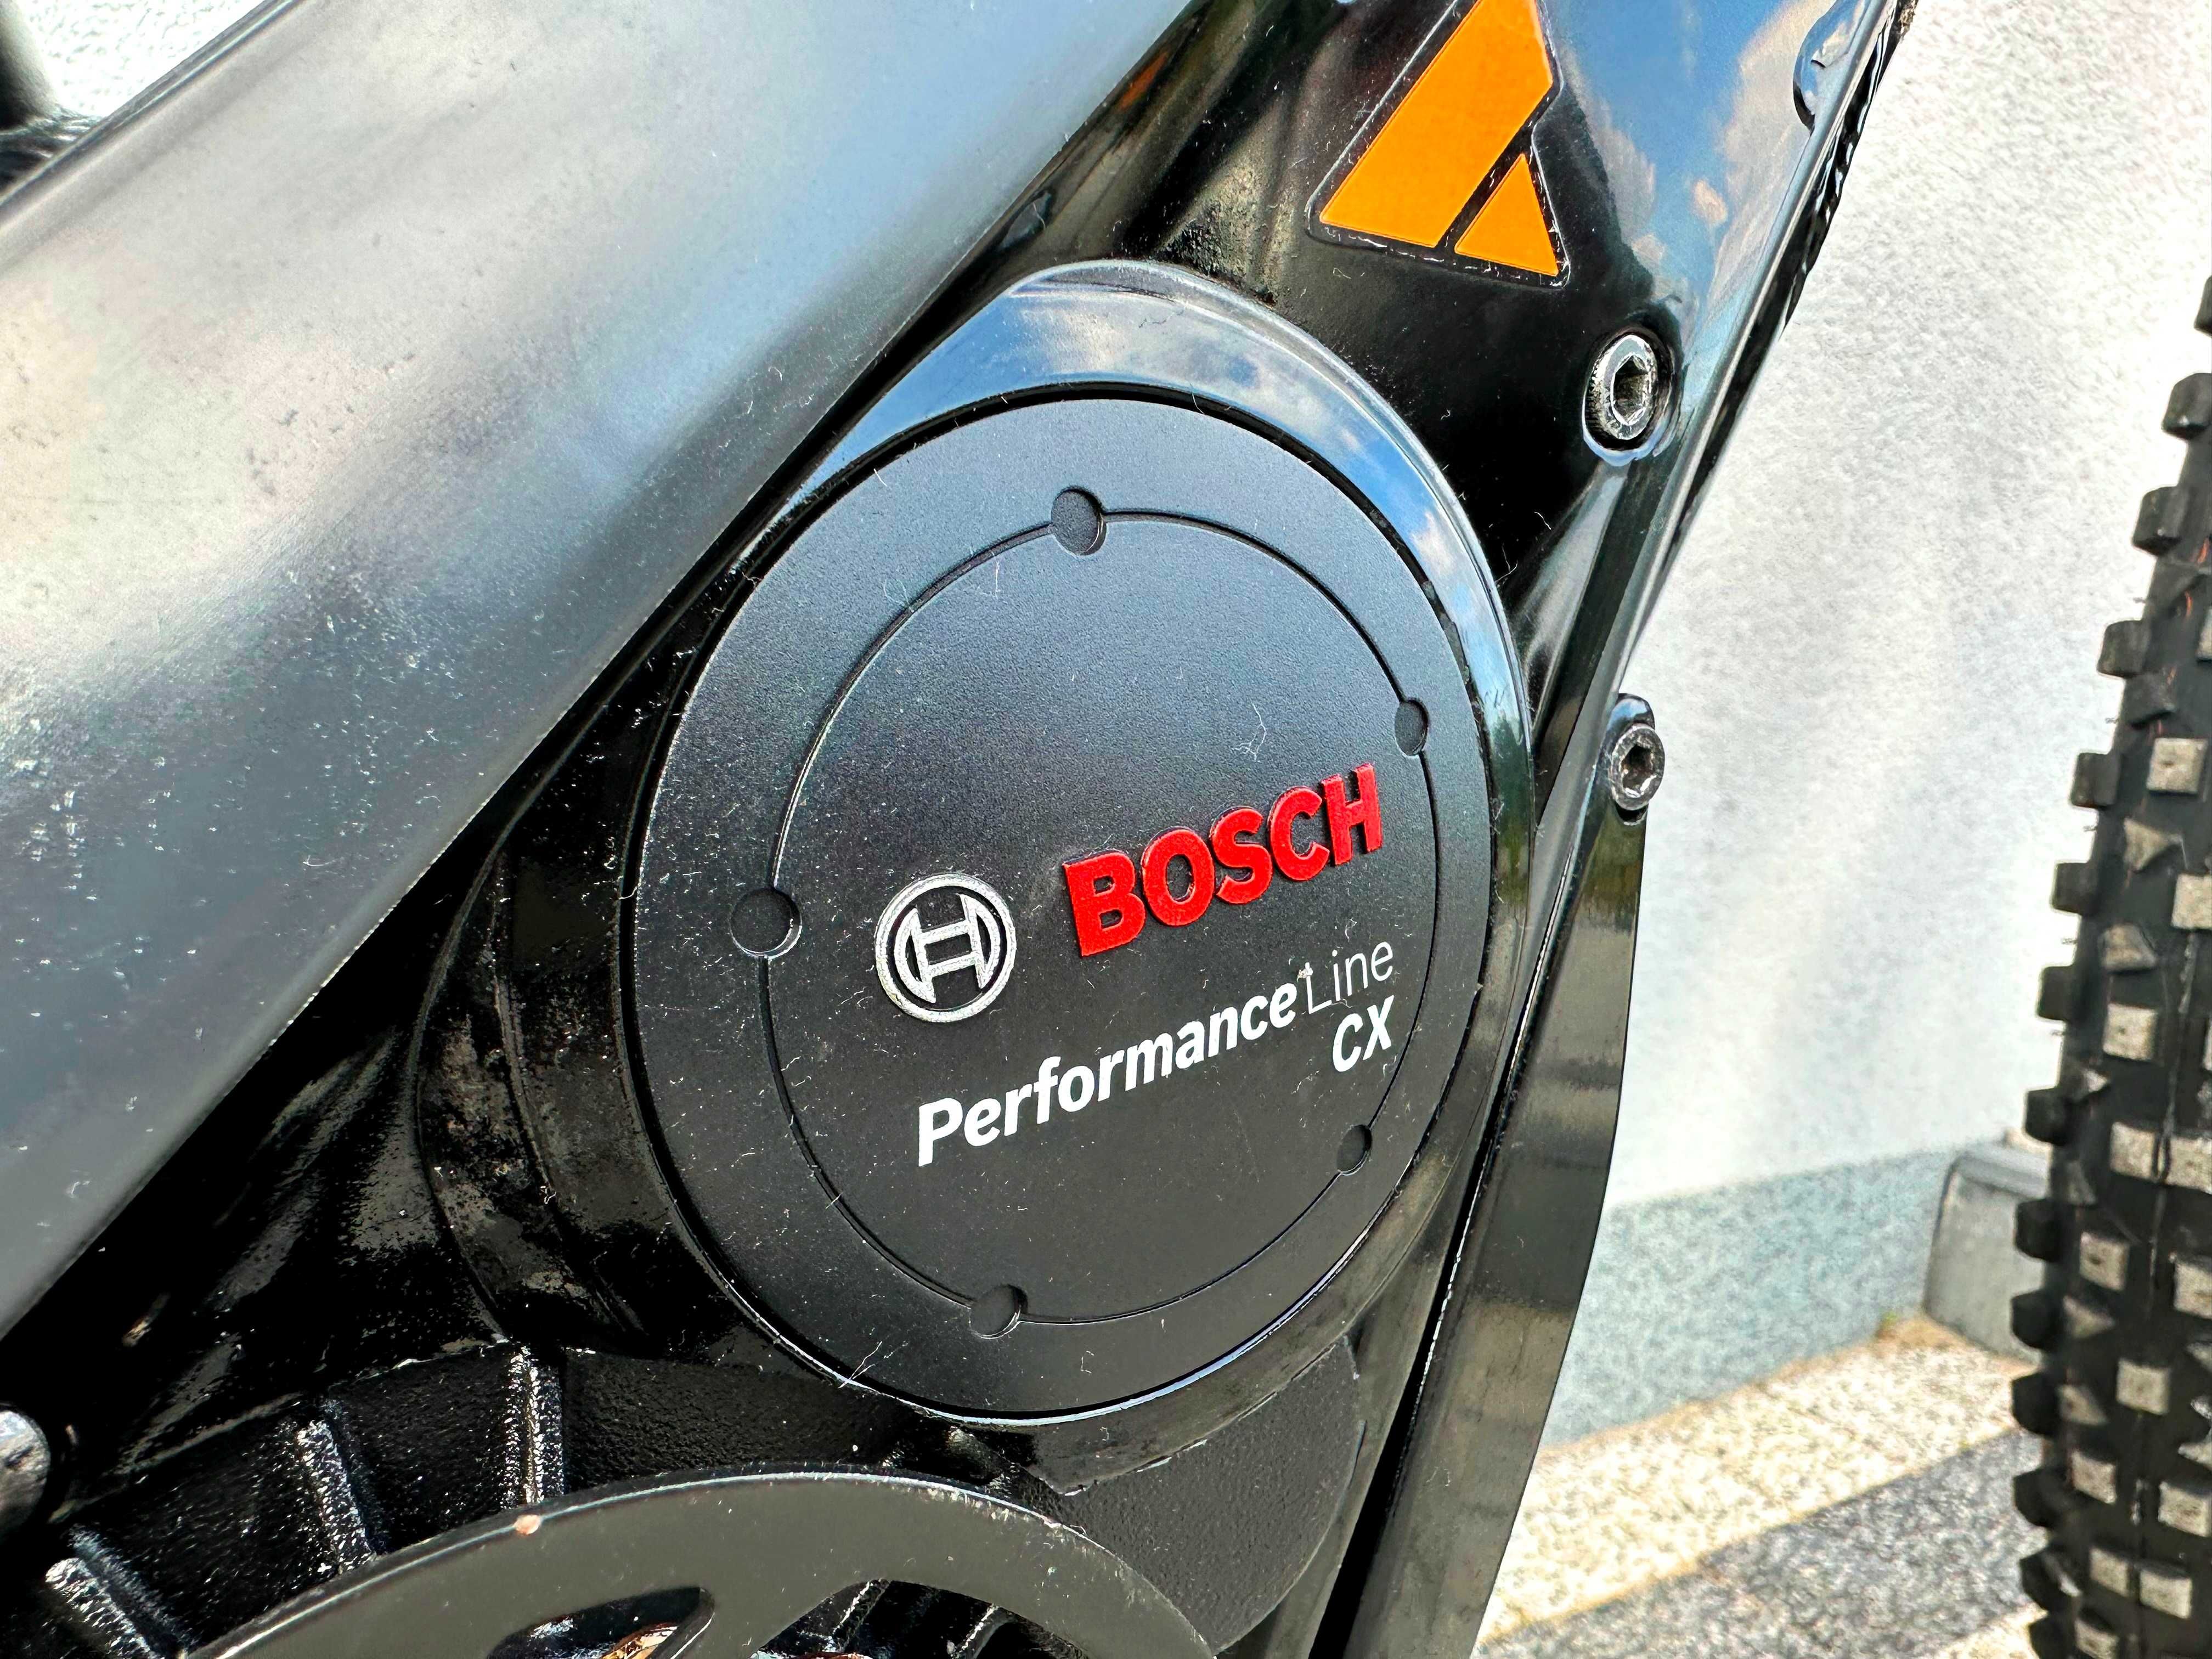 Elektryczny BULLS TWENTY 9 Bosch Performance CX Shimano DEORE XT 11S